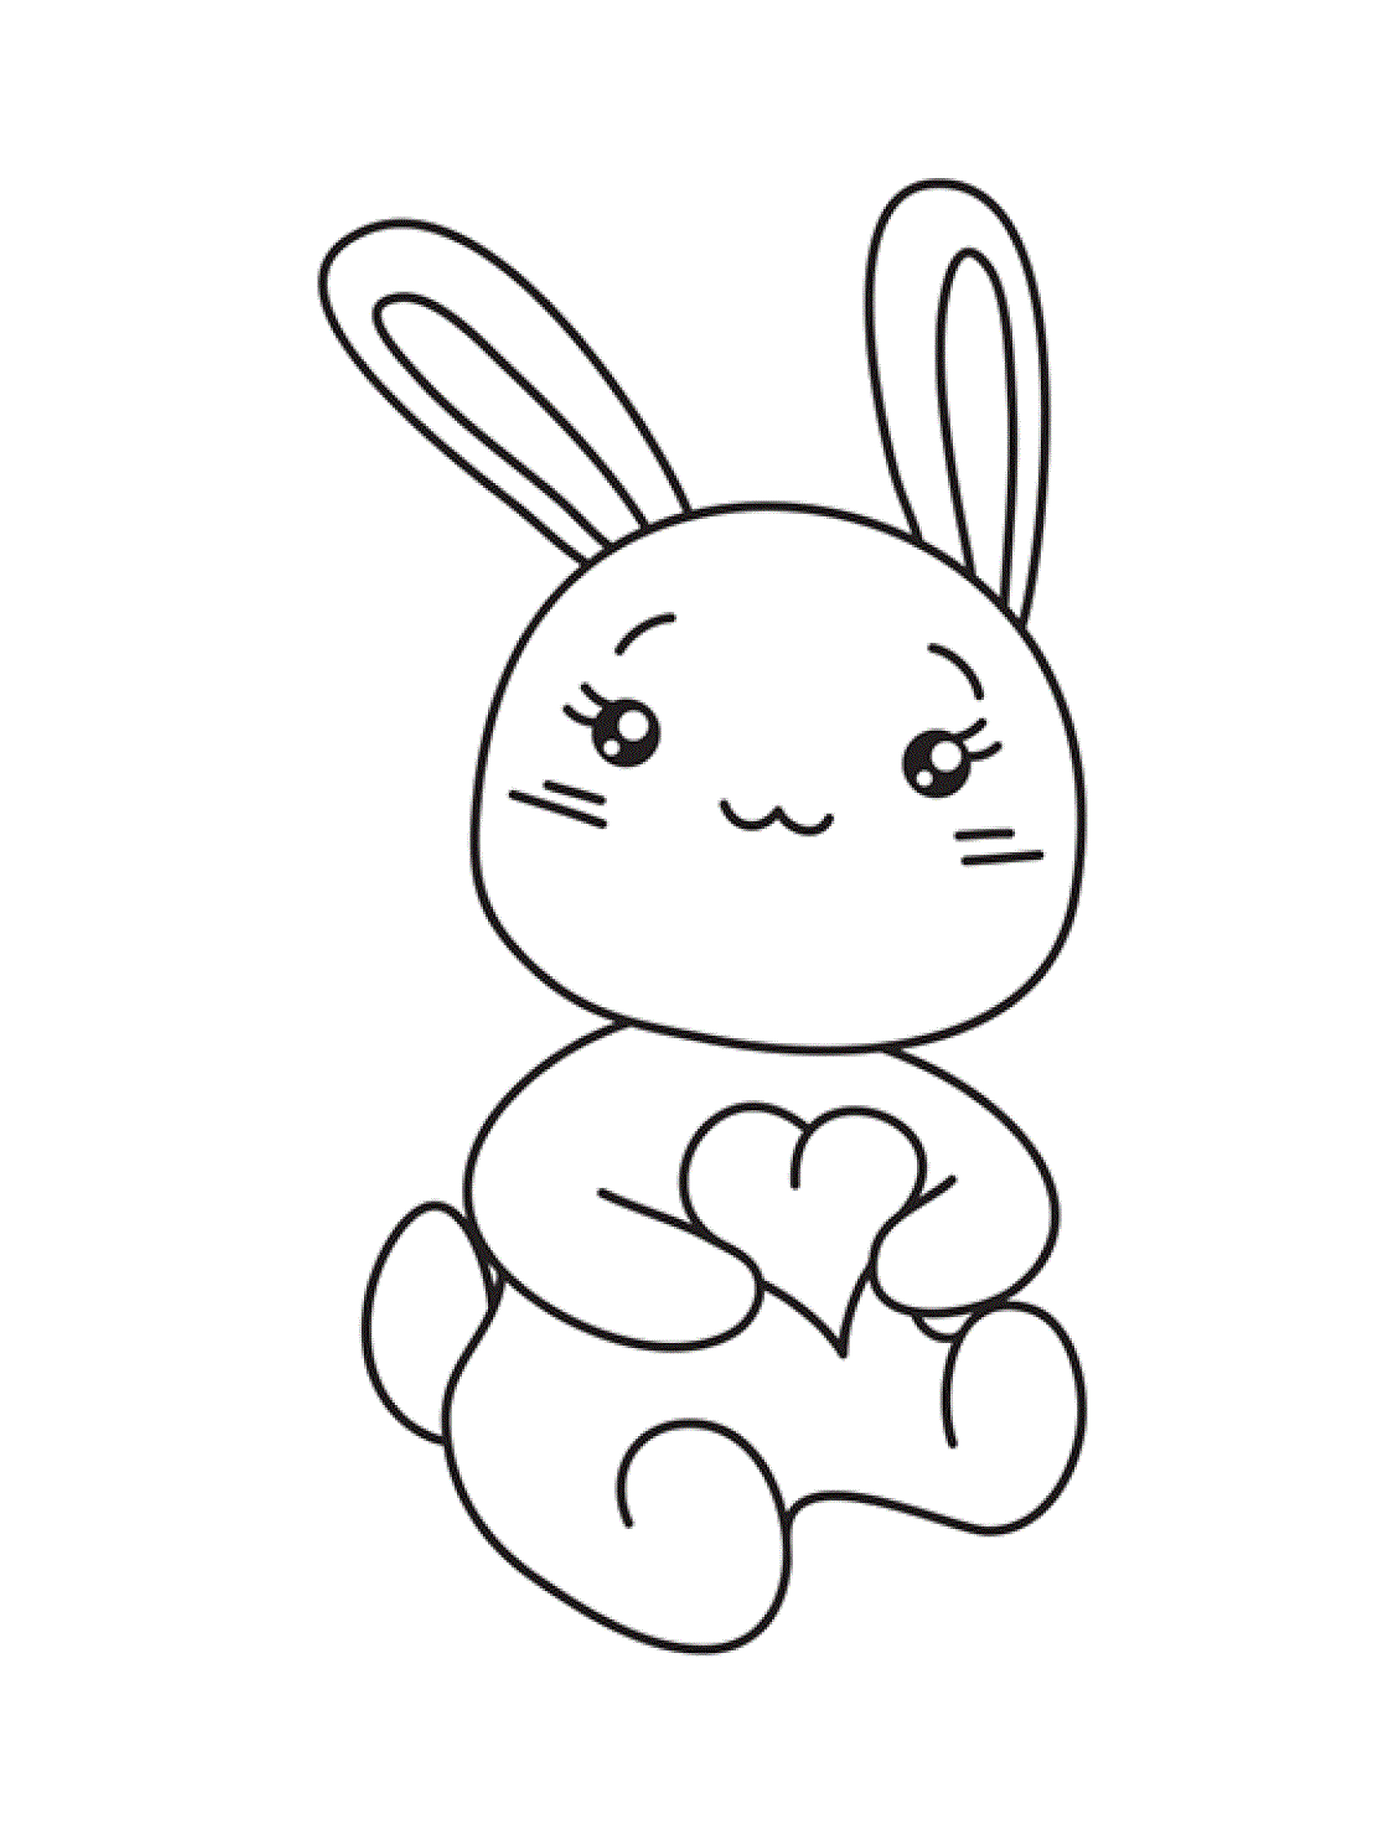  有心的可爱小兔子 